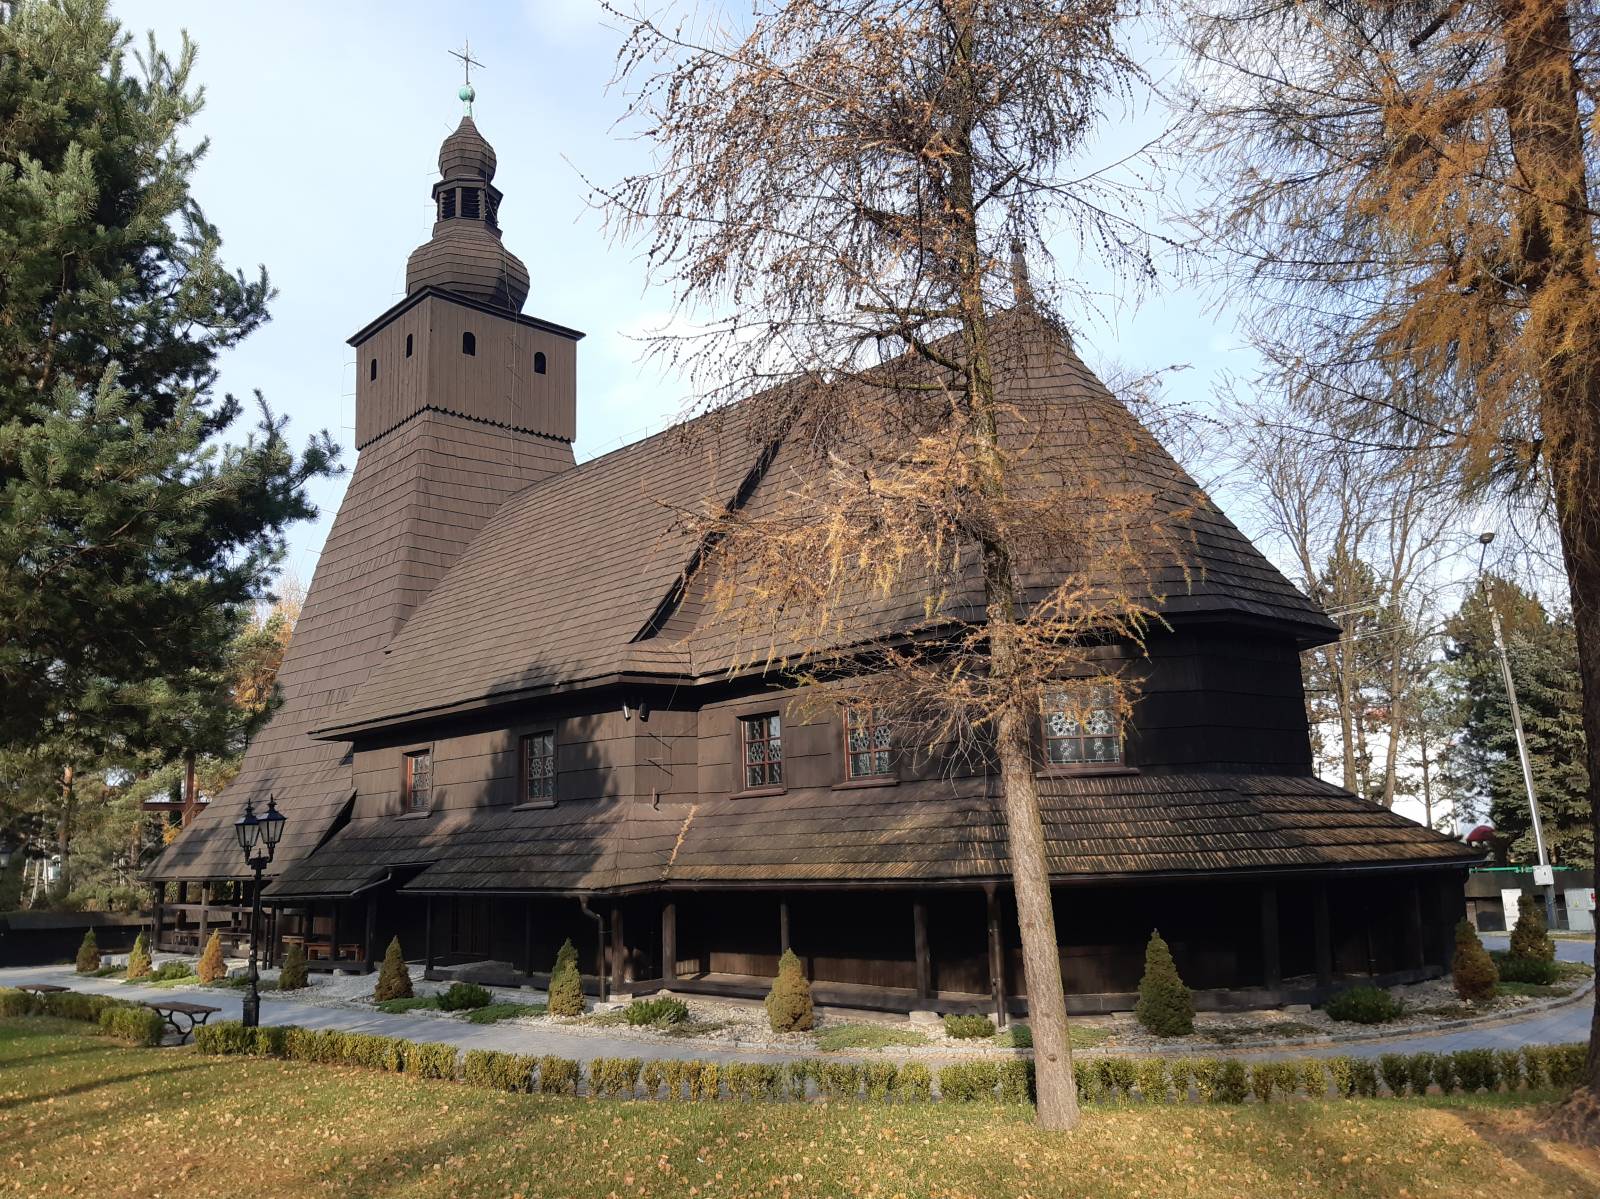 Ten kościół został wybudowany w Jastrzębiu-Zdroju i przeniesiony do Kaczyc